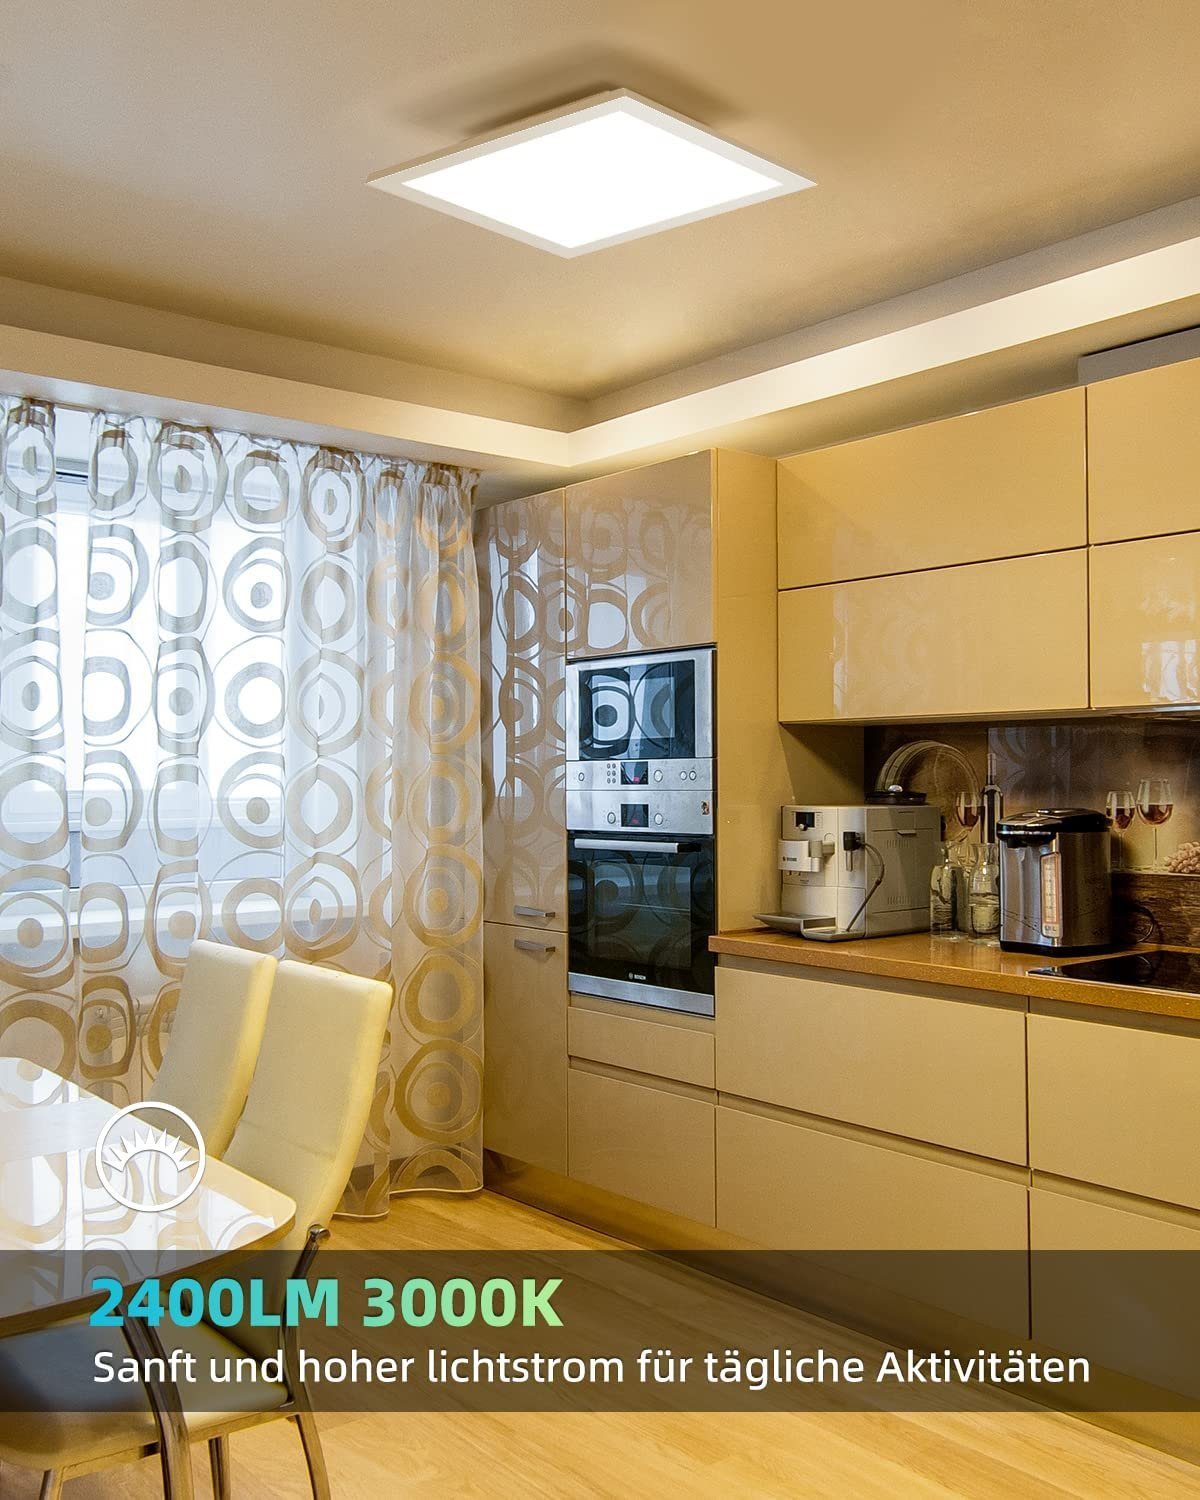 ZMH Deckenleuchten LED Panel für Wohnzimmer,45*45cm/60*60cm, Design 45*45cm Flach Büro, 3000K Warmweiß